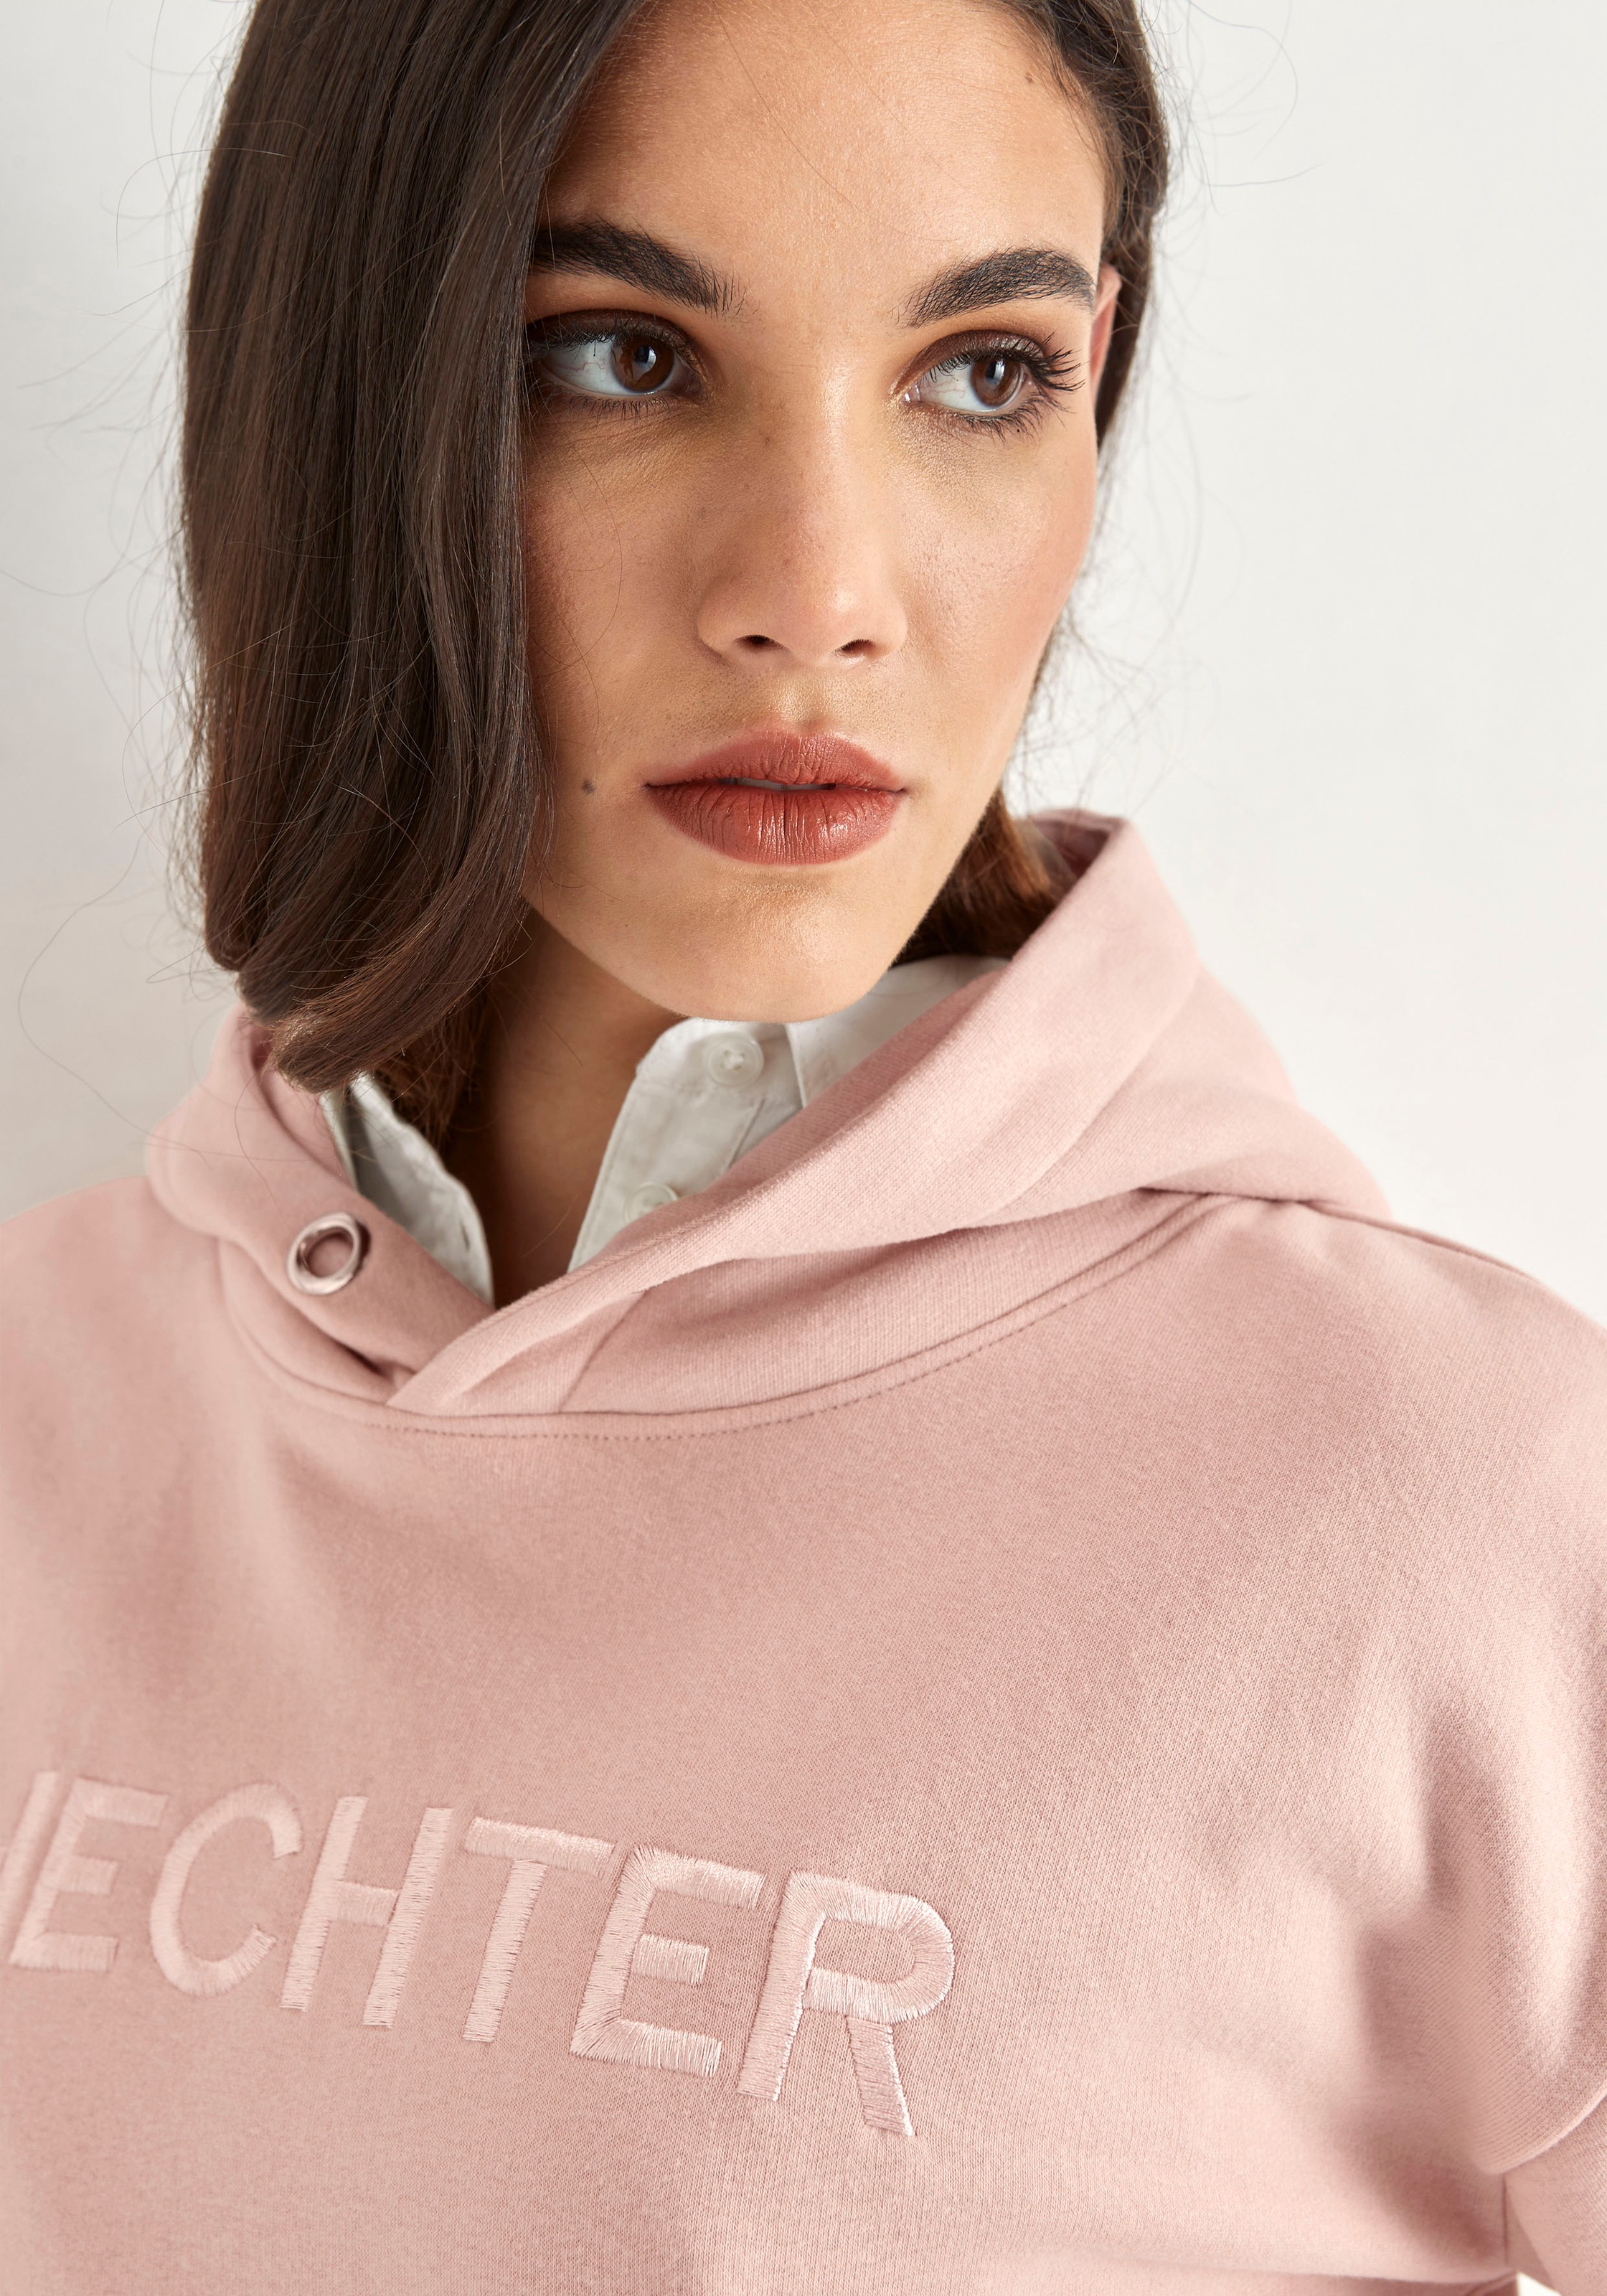 HECHTER mit Kapuzensweatshirt, OTTO Markenstickerei bei PARIS kaufen